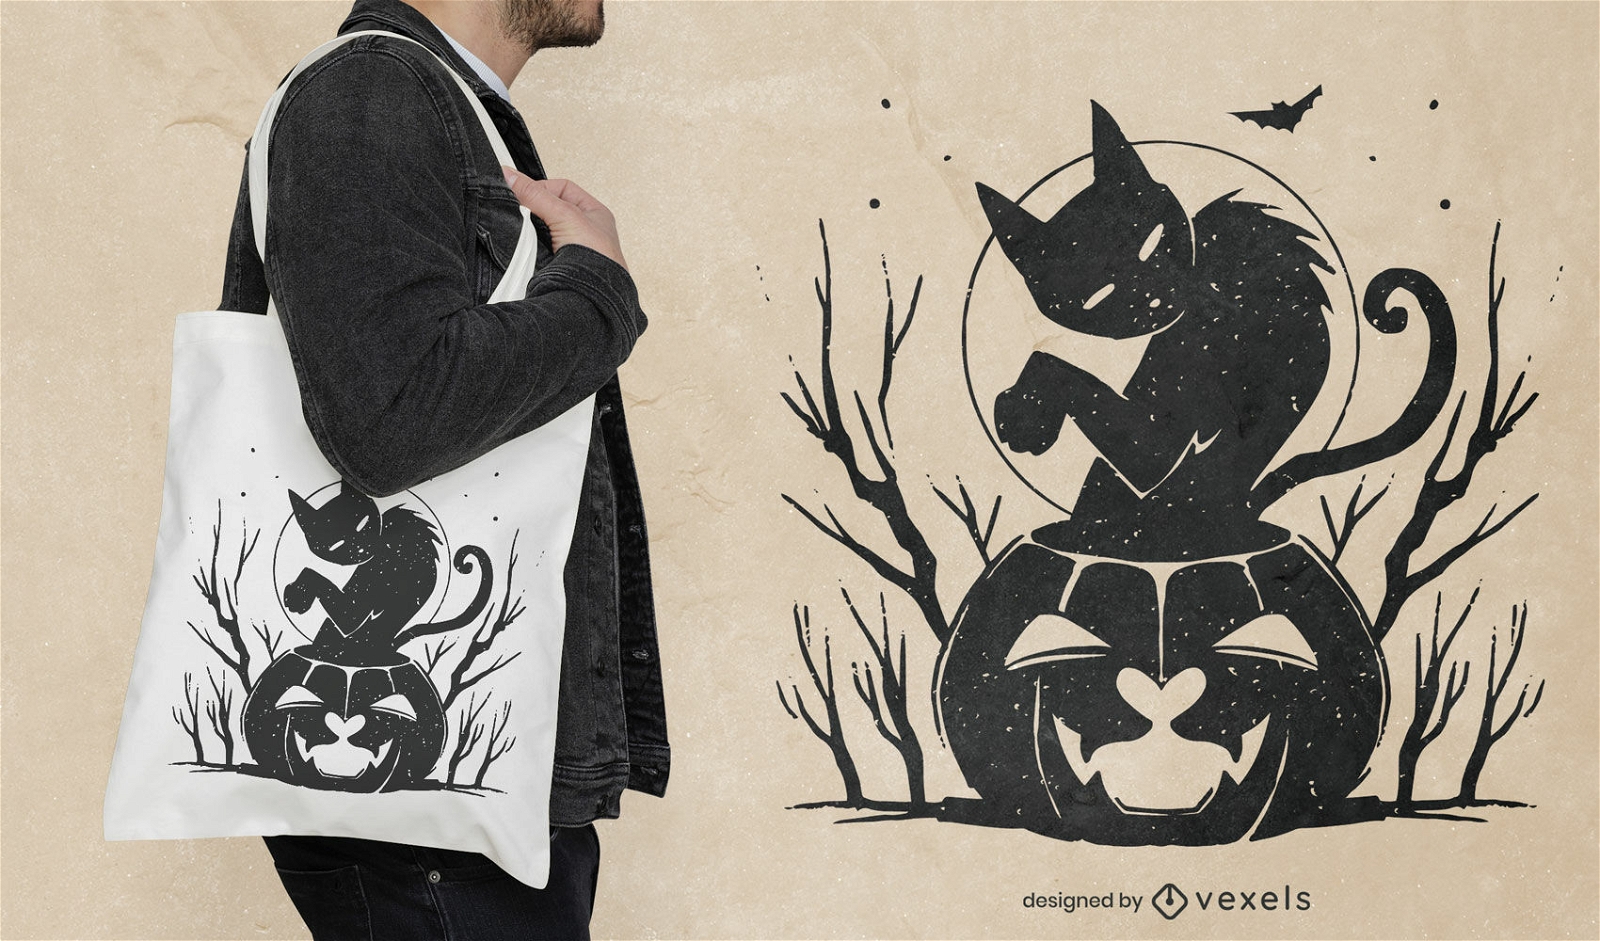 Gruseliges Halloween-Einkaufstaschendesign mit schwarzer Katze